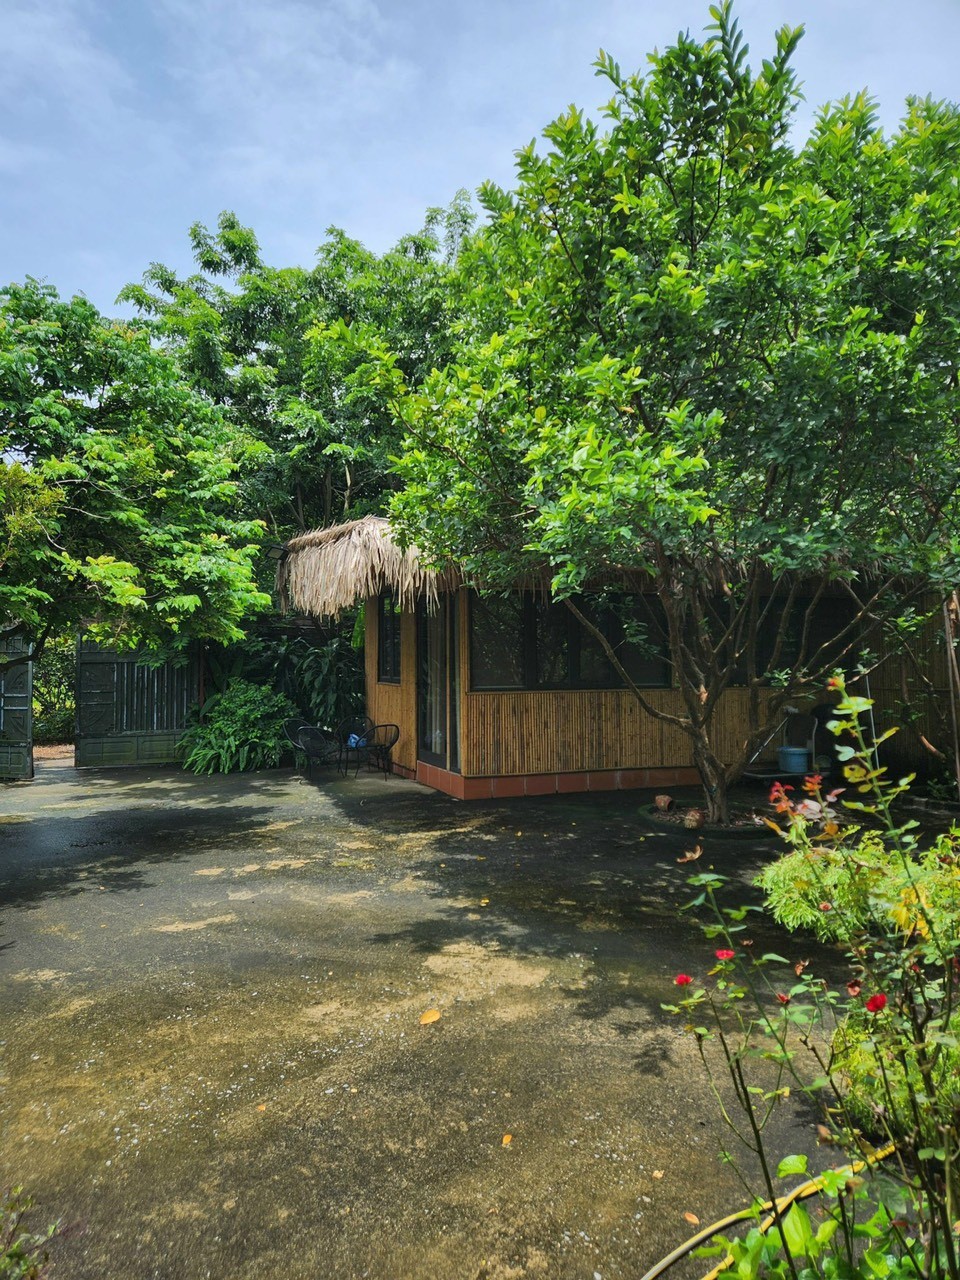 Chính chủ cần bán nhà vườn vị trí đẹp phường Nhật Tân, quận Tây Hồ, thành phố Hà Nội. 2